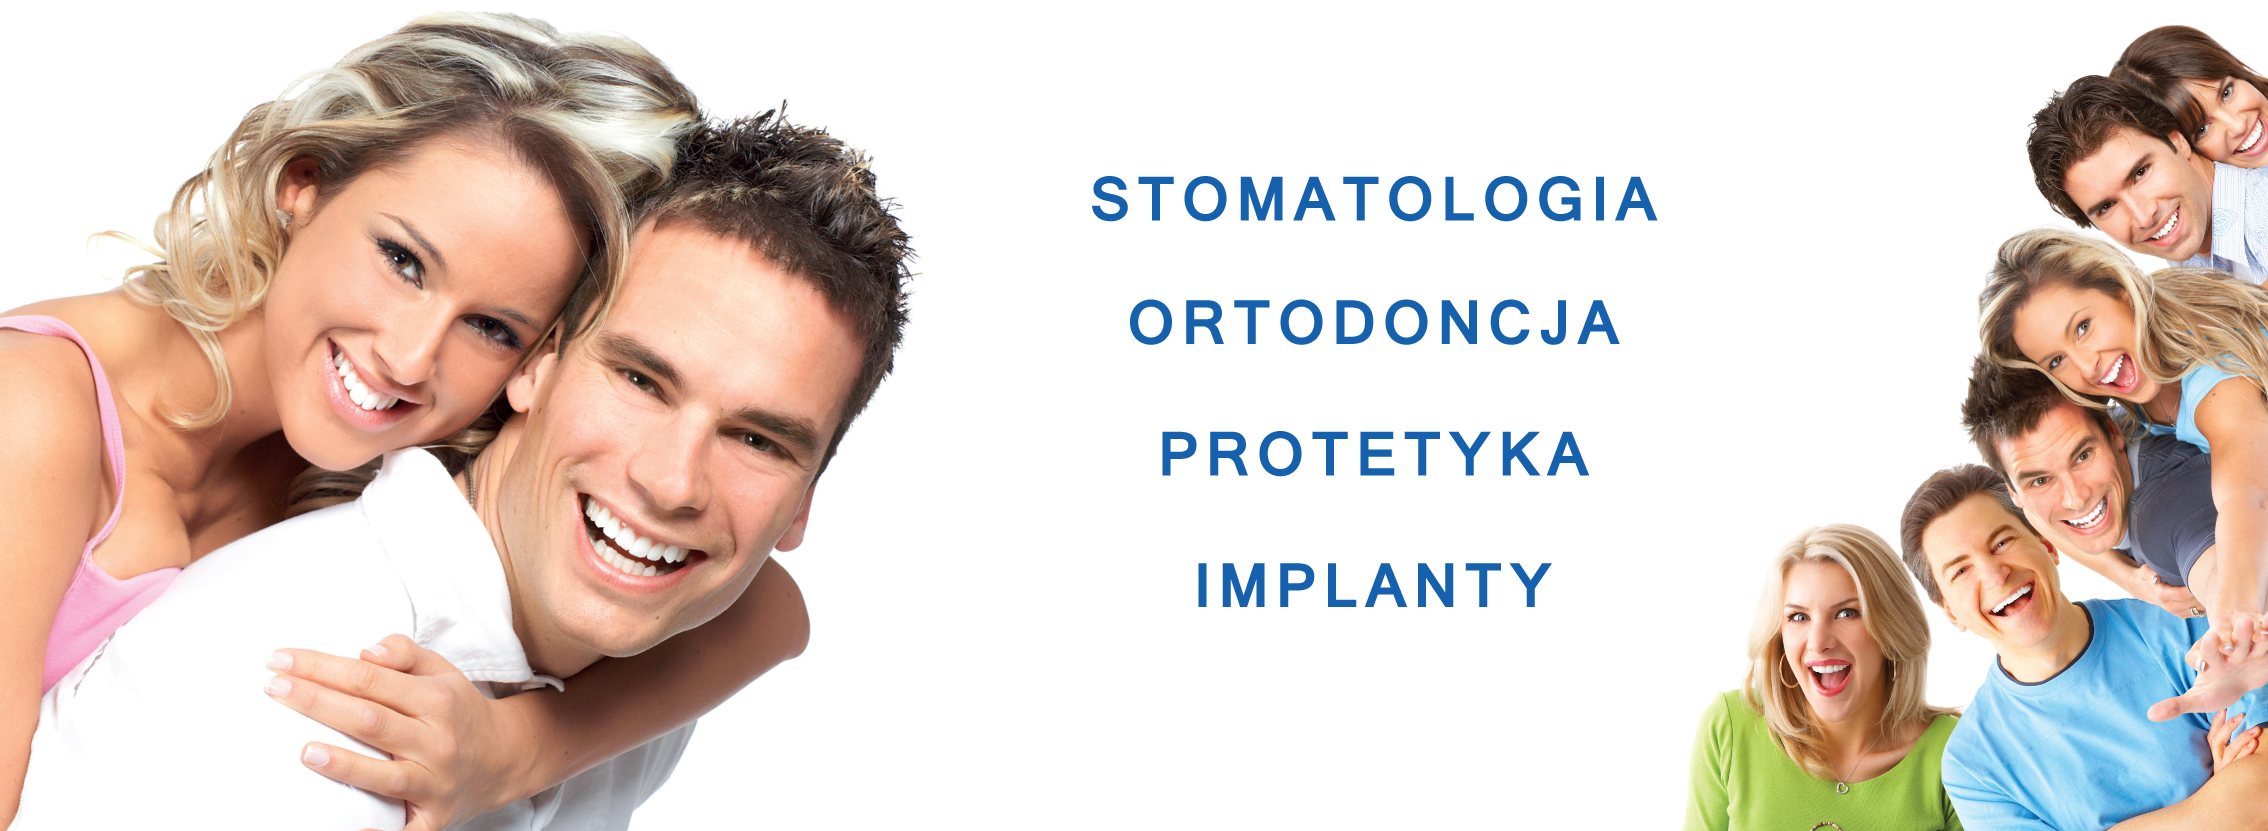 Dental Spa Dentysta Ortodoncja Protetyka Implanty Wola Gocław Białołęka Warszawa